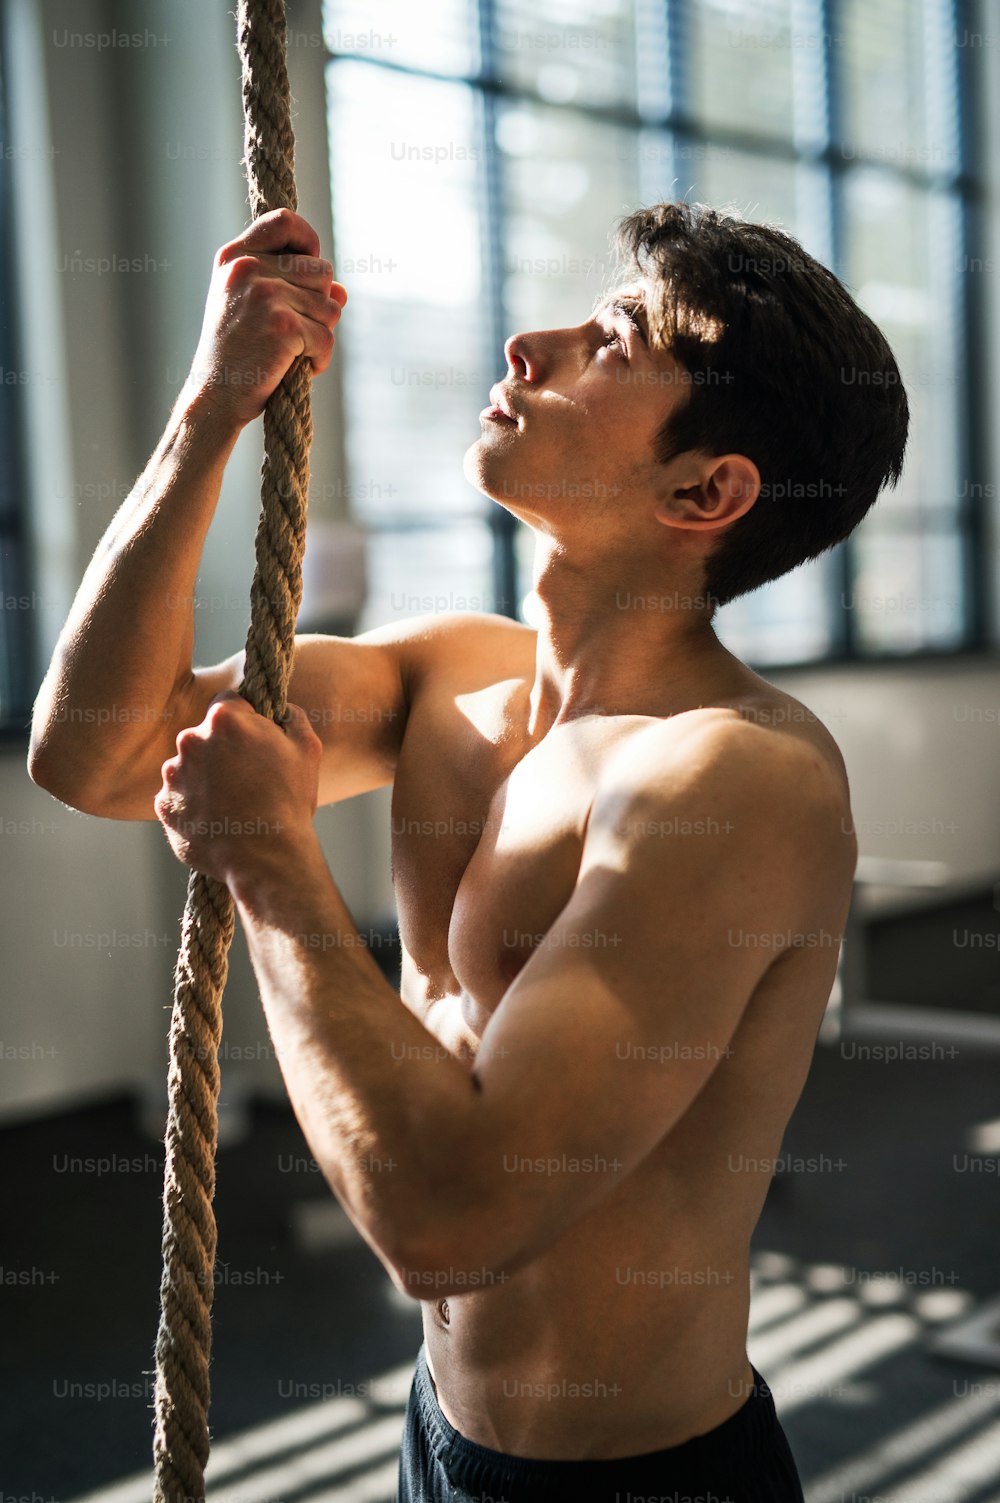 Un joven en forma en el gimnasio de pie en topless, sosteniendo una cuerda de escalada.